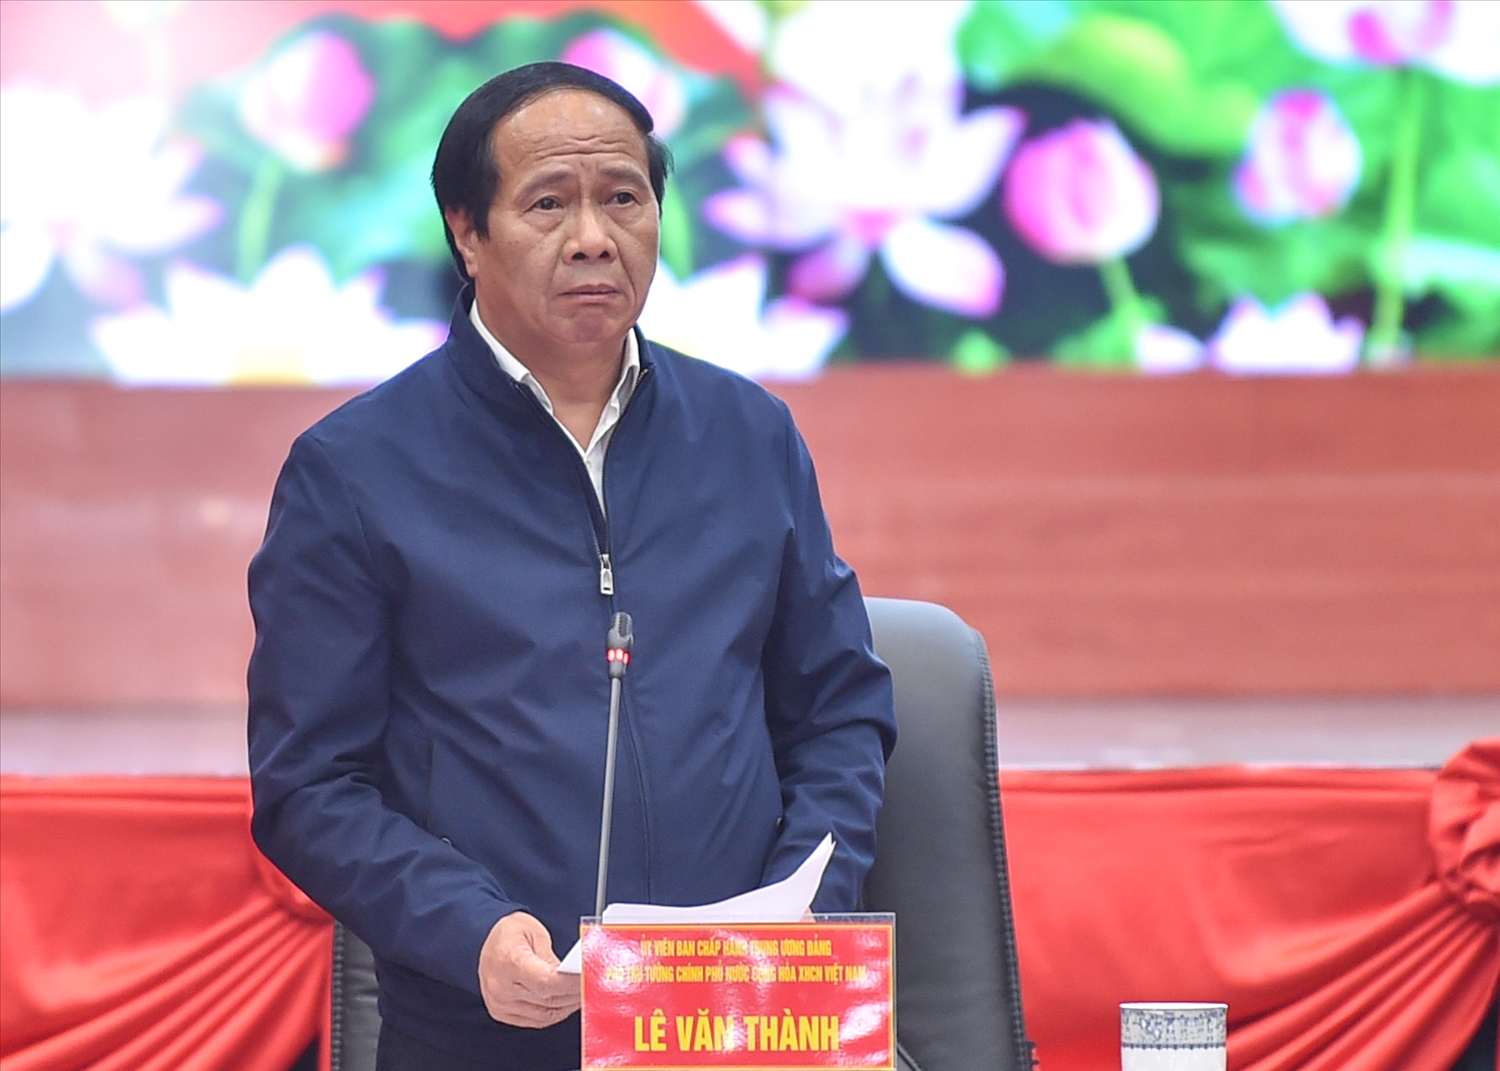 Phó Thủ tướng Lê Văn Thành đánh giá cao lãnh đạo Hải Phòng đã xác định trúng các nhiệm vụ trọng tâm thời gian tới, nhất là trong phát triển hệ thống kết cấu hạ tầng và thu hút các nhà đầu tư, doanh nghiệp lớn. Ảnh: VGP/Nhật Bắc